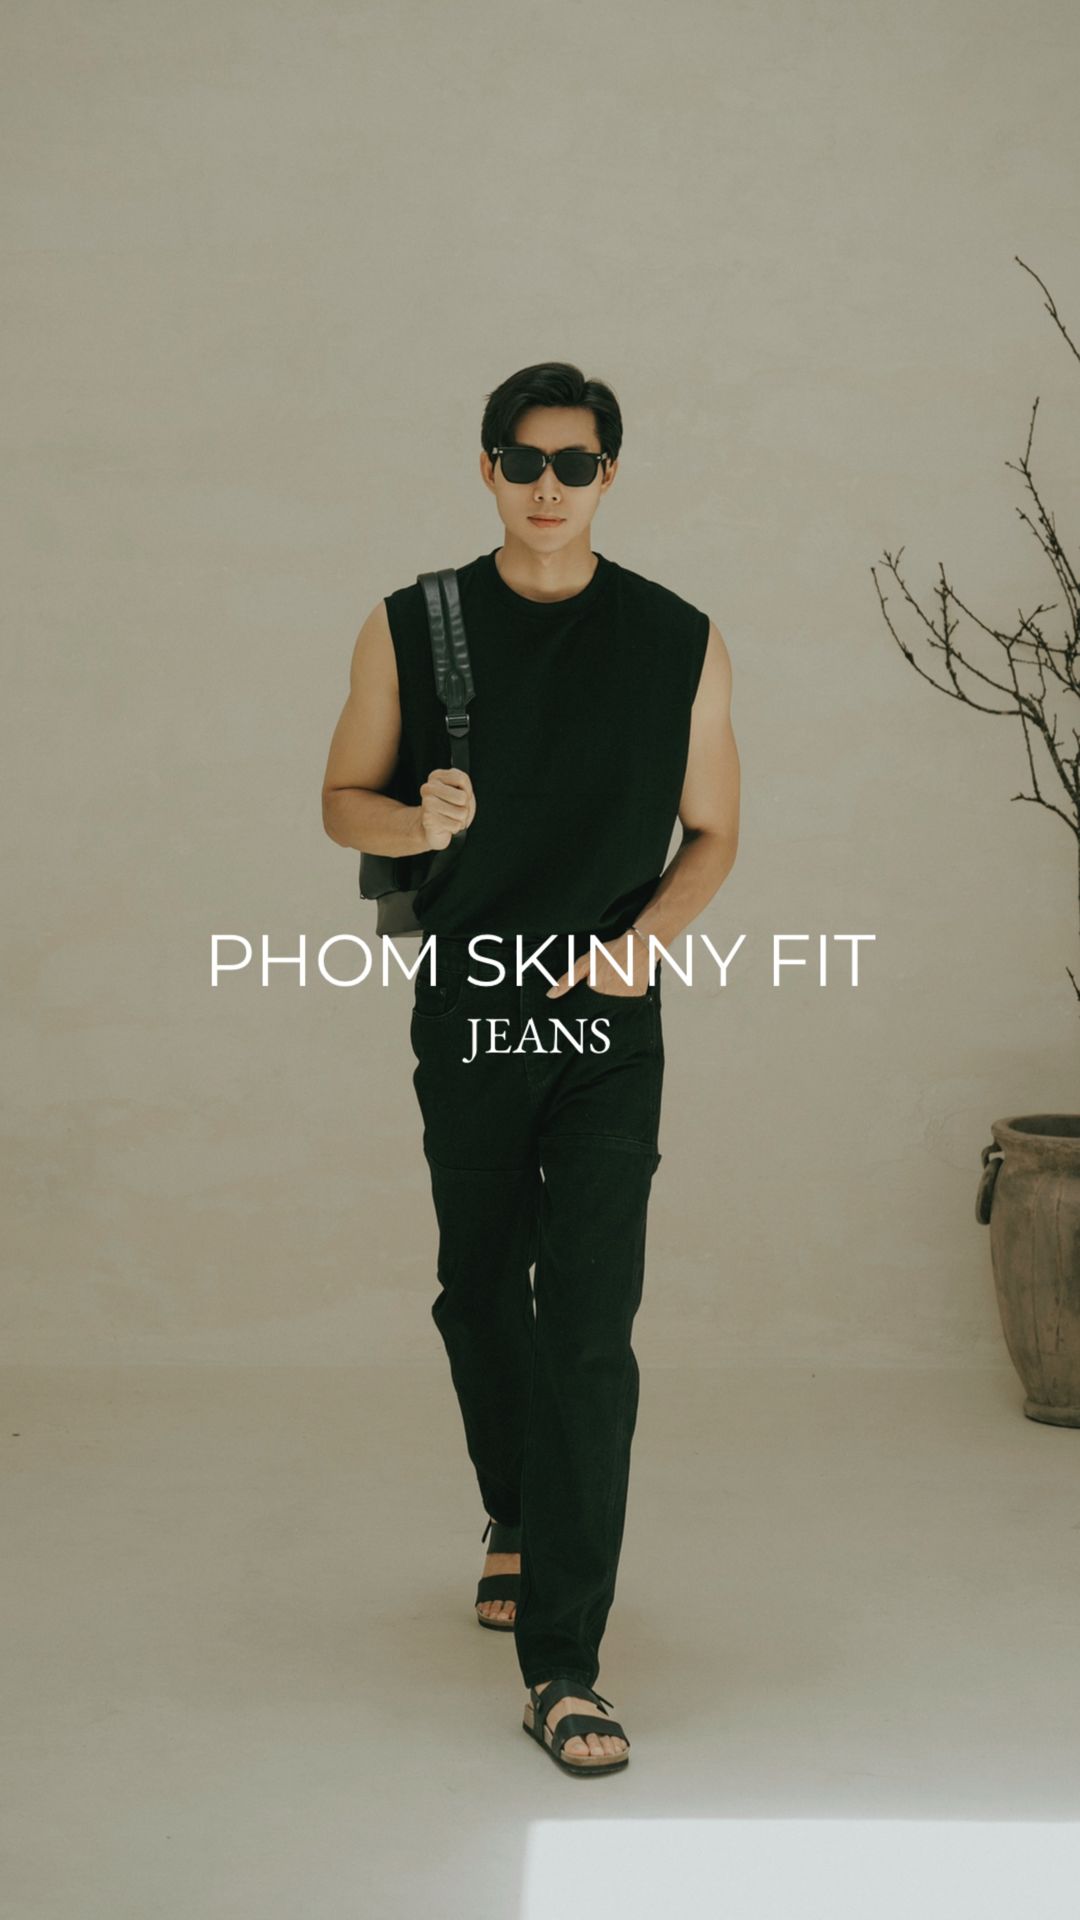 Skinny Jean